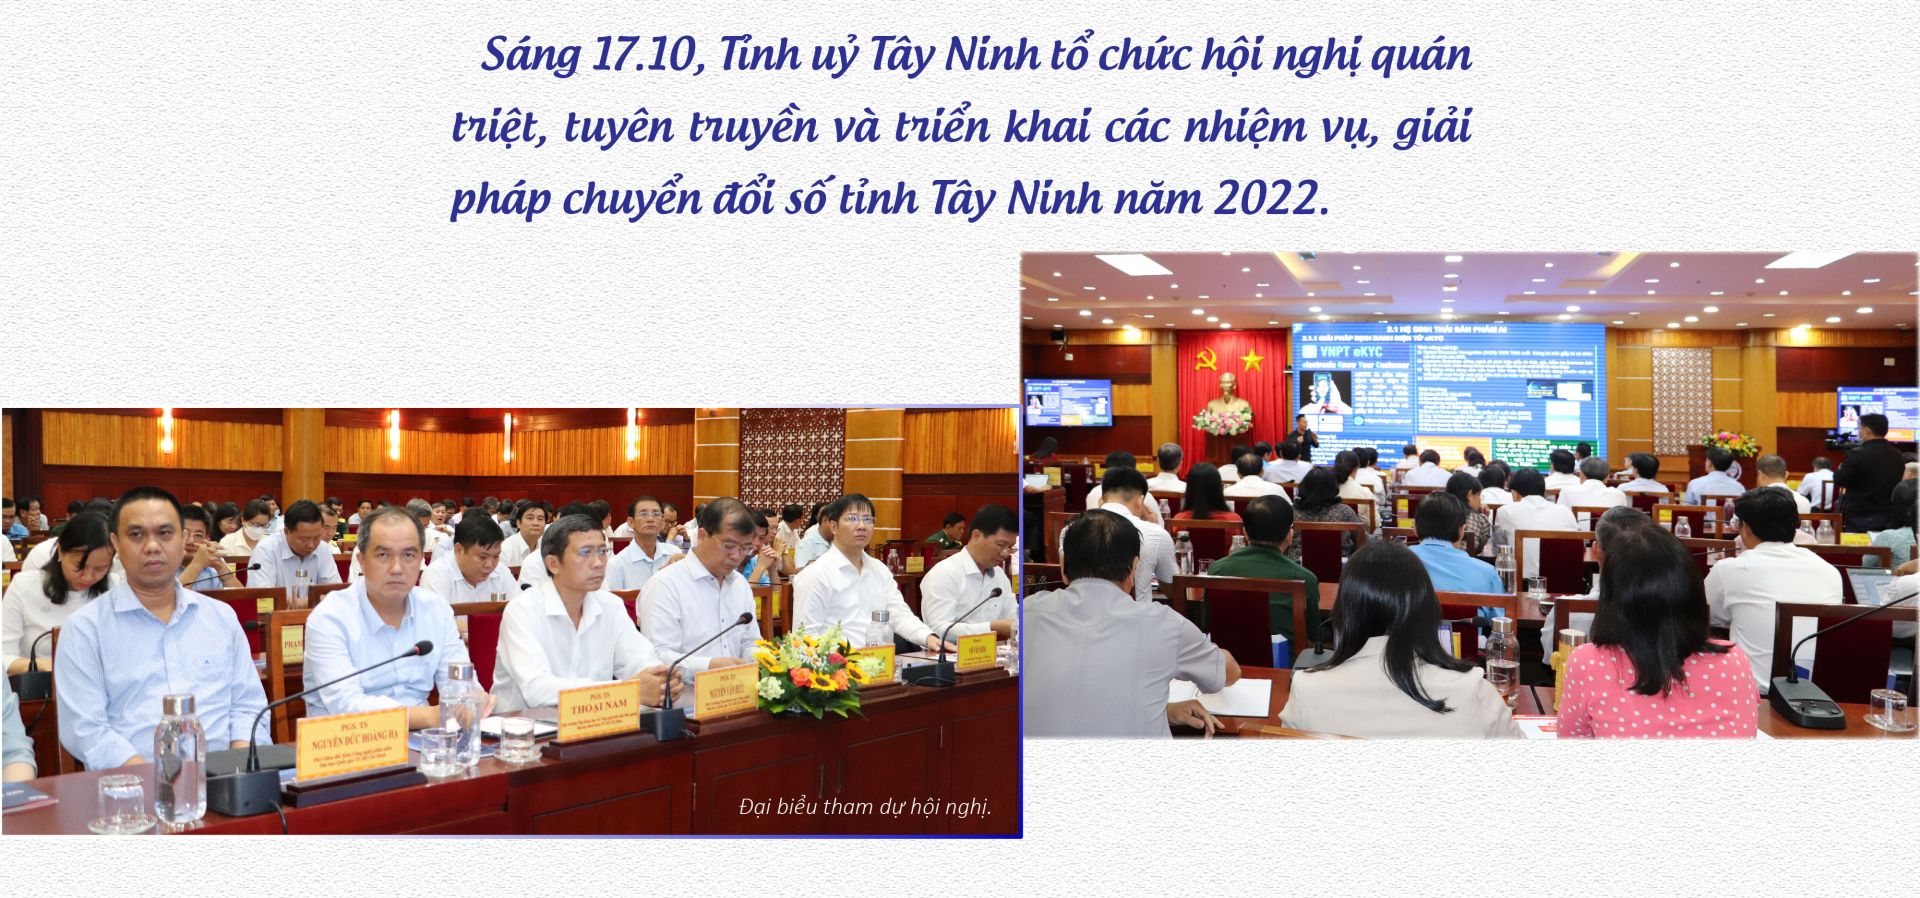 Hội nghị quán triệt, triển khai các nhiệm vụ, giải pháp chuyển đổi số tỉnh Tây Ninh